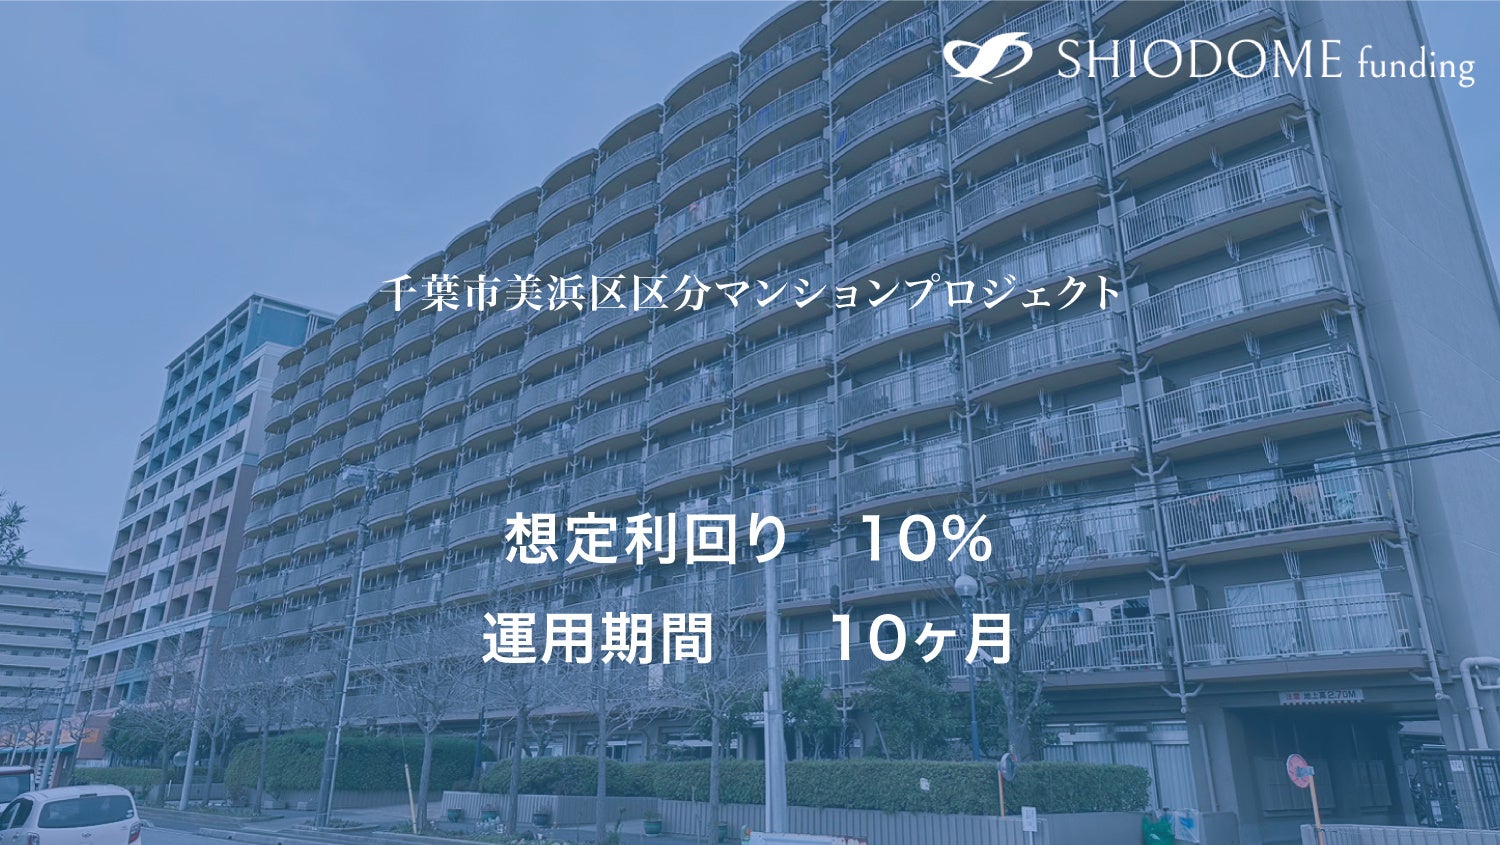 「汐留funding」 第4号千葉市美浜区区分マンションプロジェクトのサブ画像1